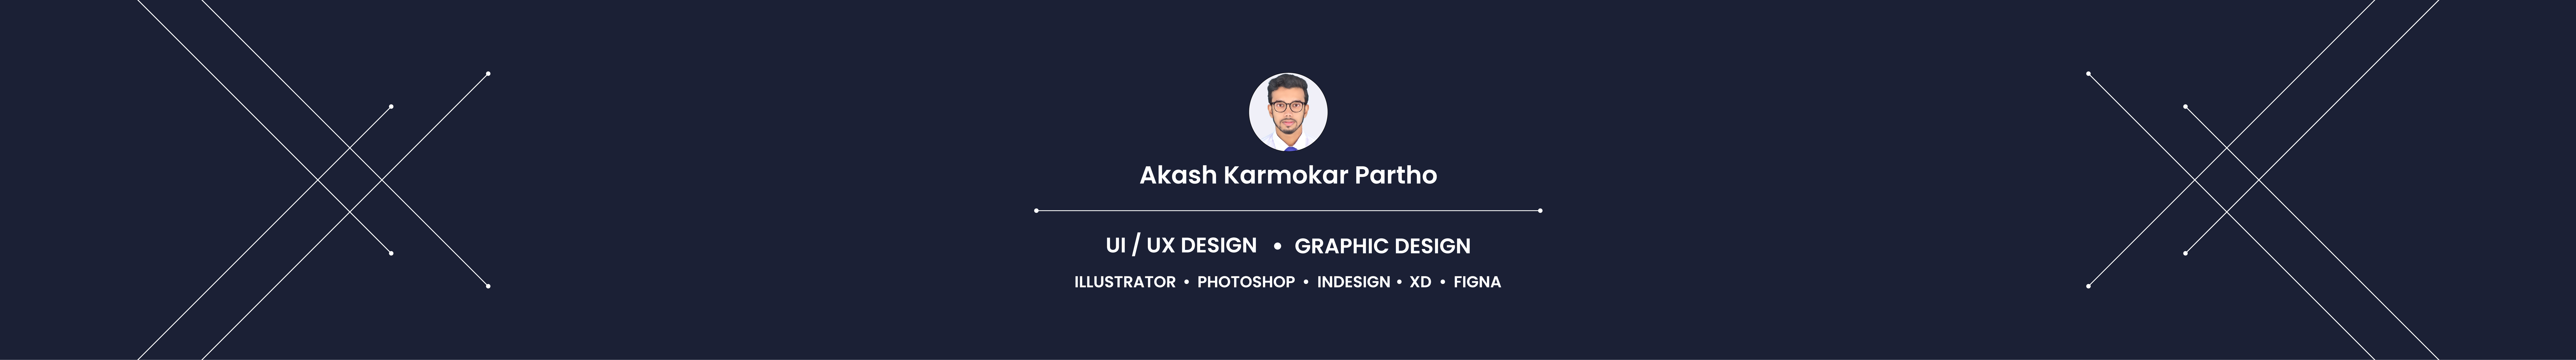 Akash Karmokar Partho's profile banner